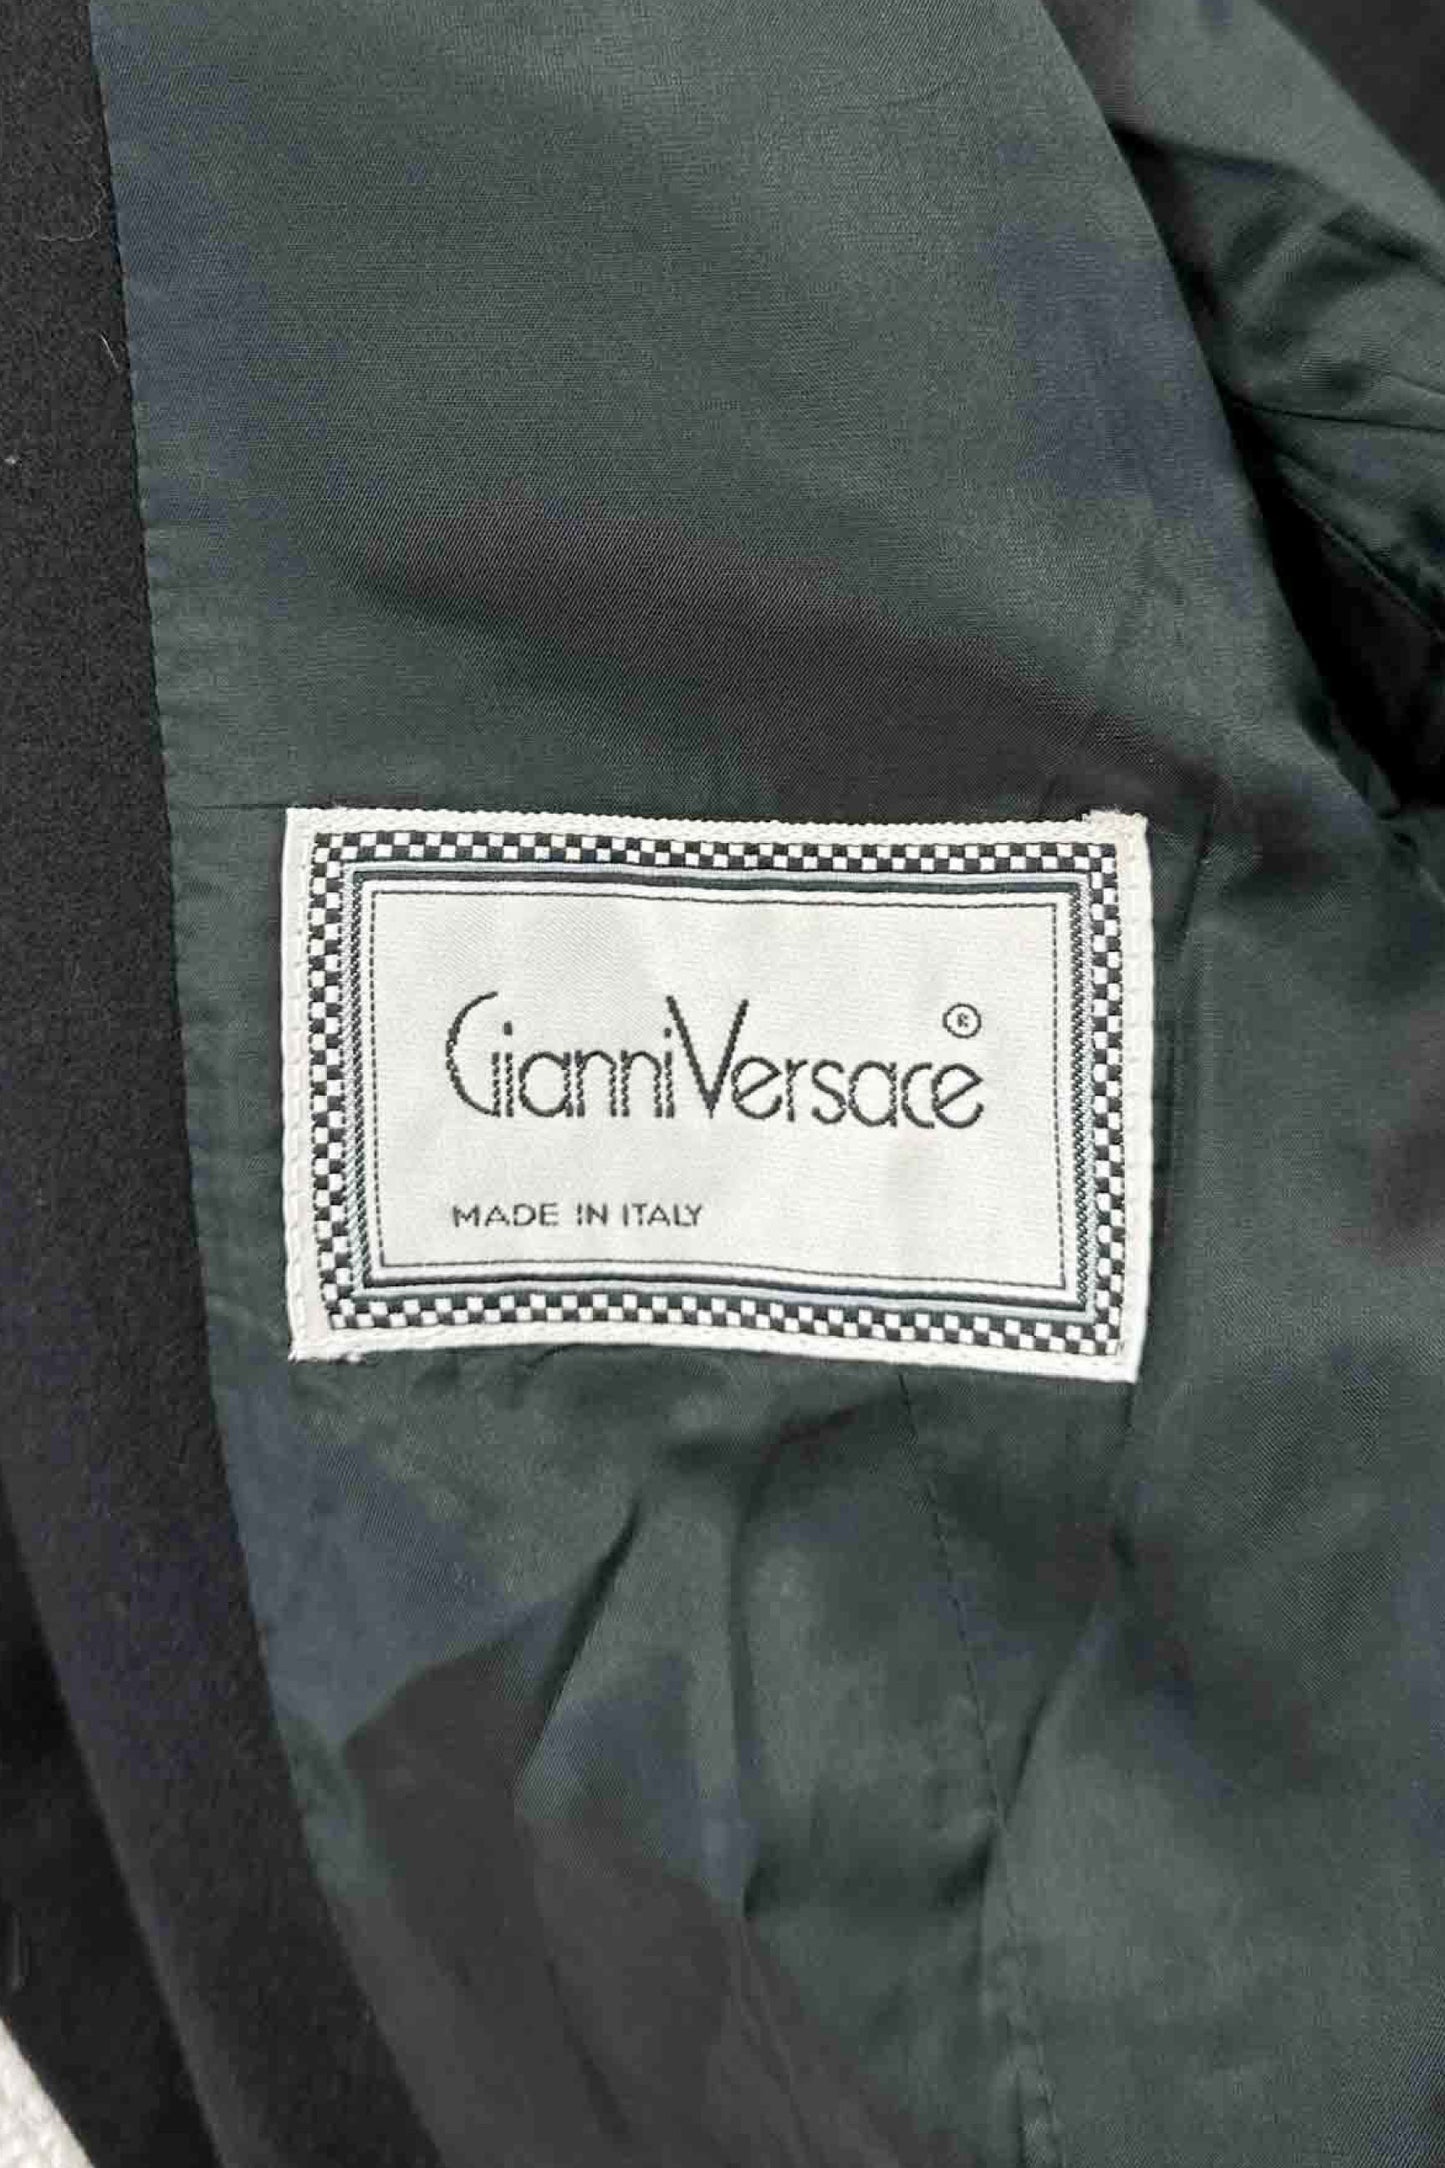 意大利制造 Gianni Versace 羊毛套装